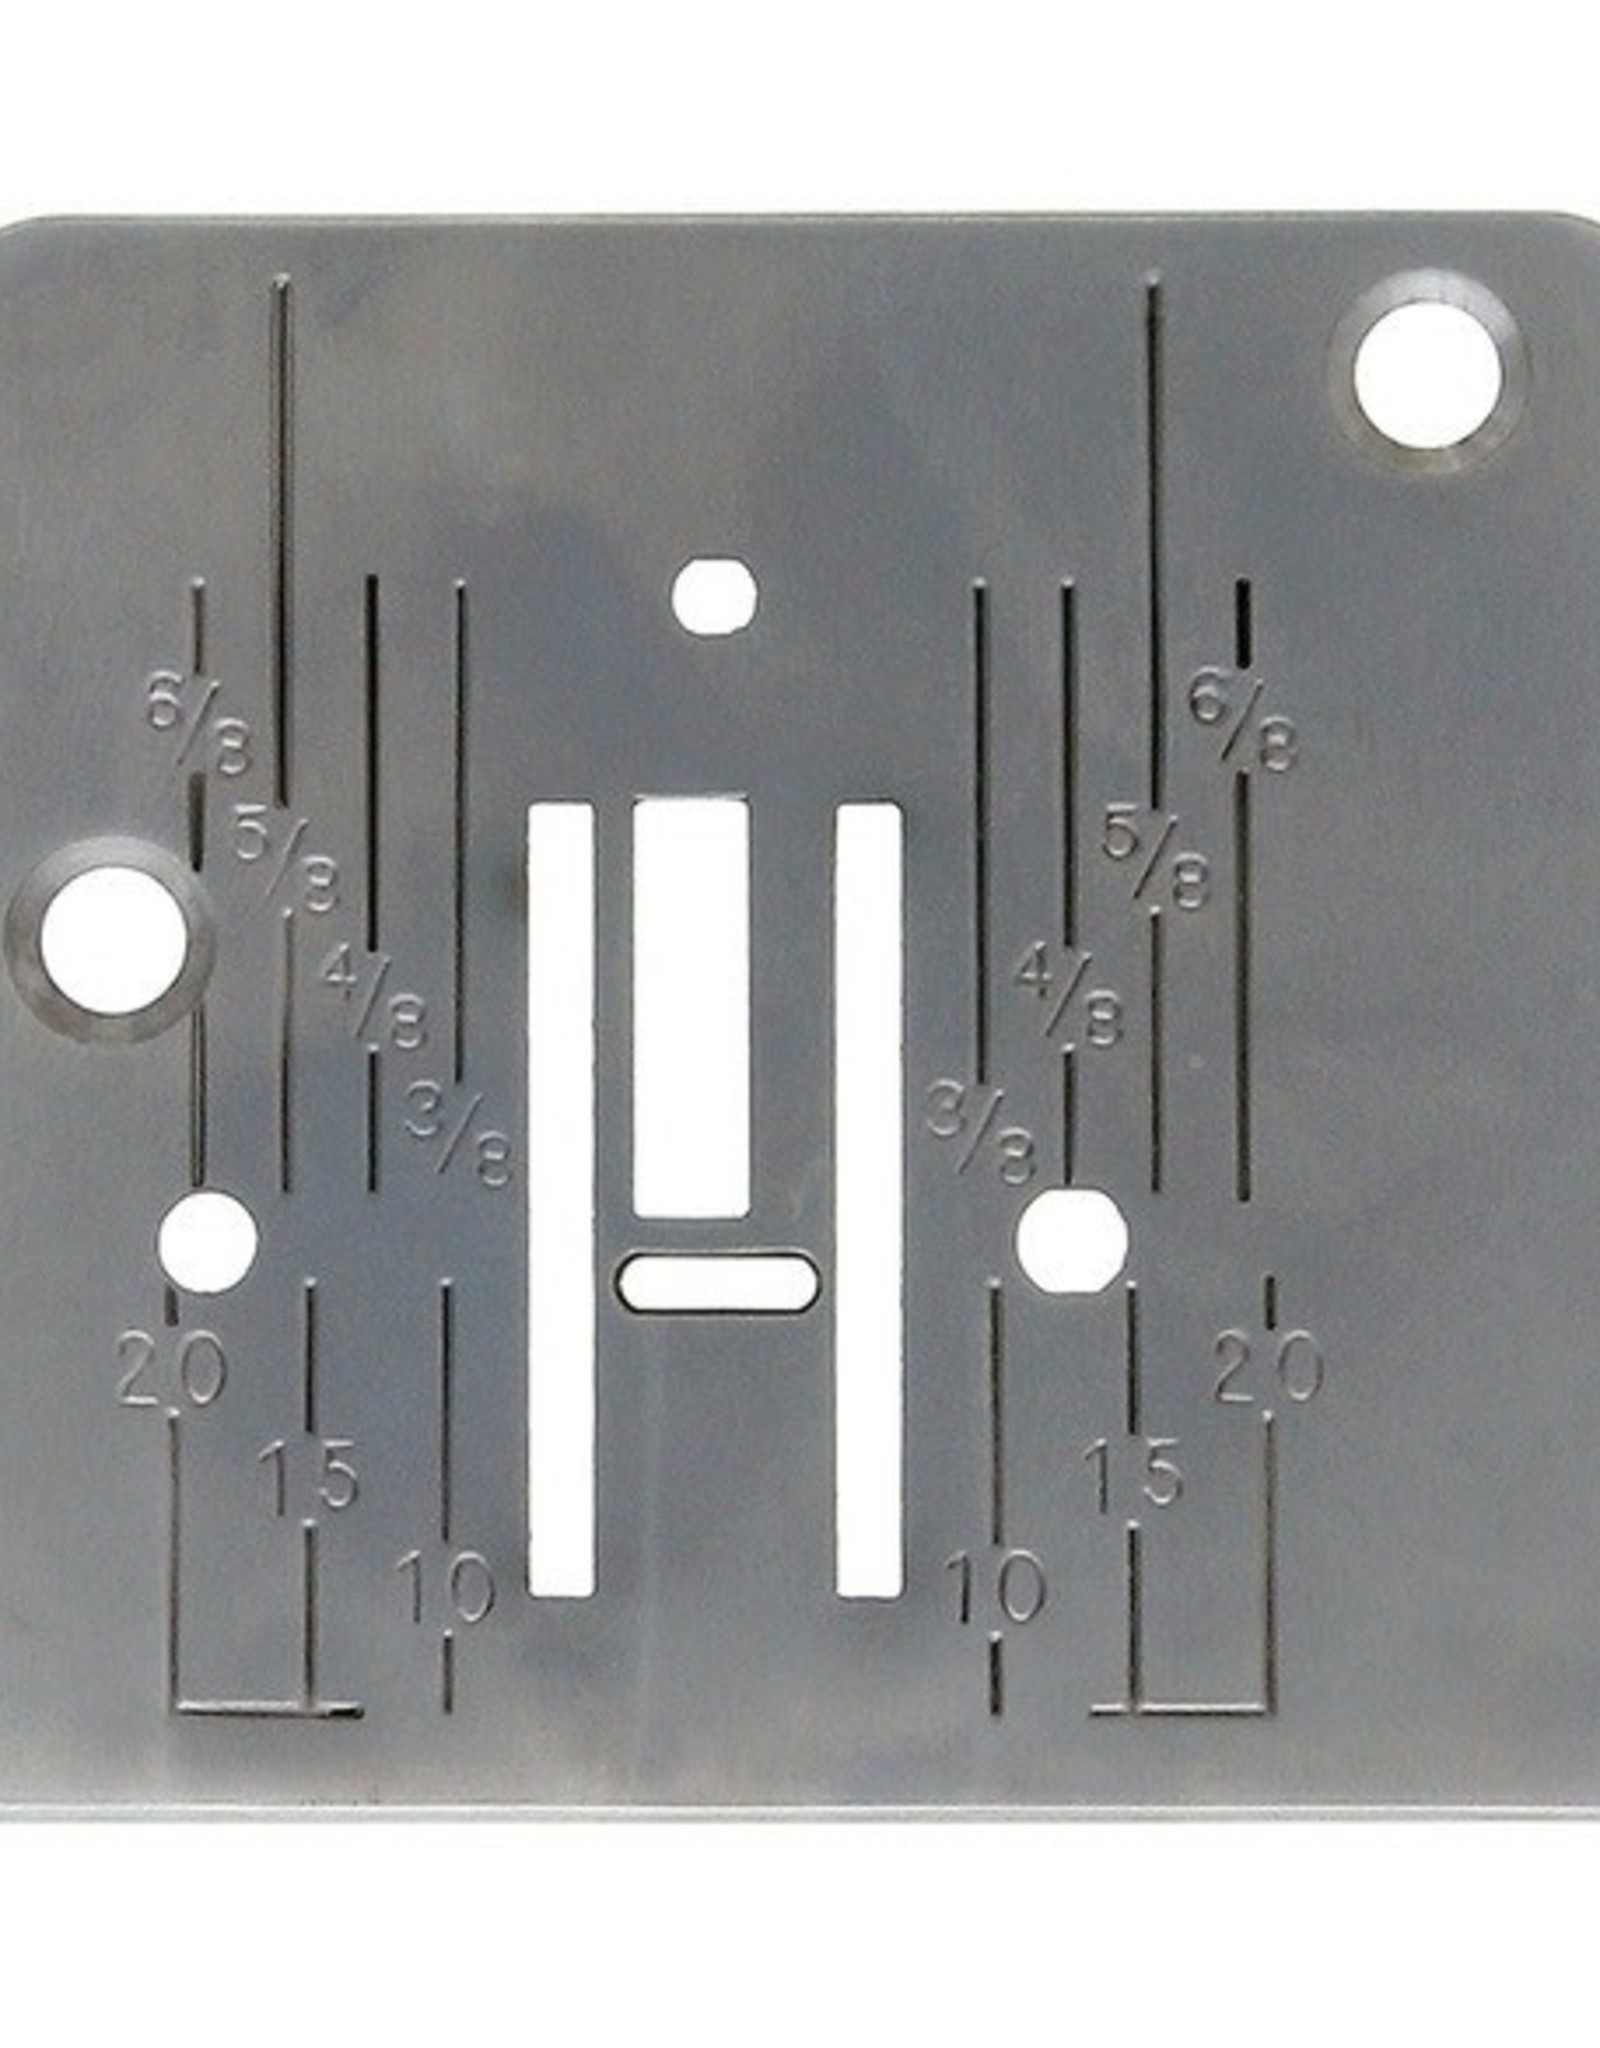 Needle plate  - Multi (744004001)